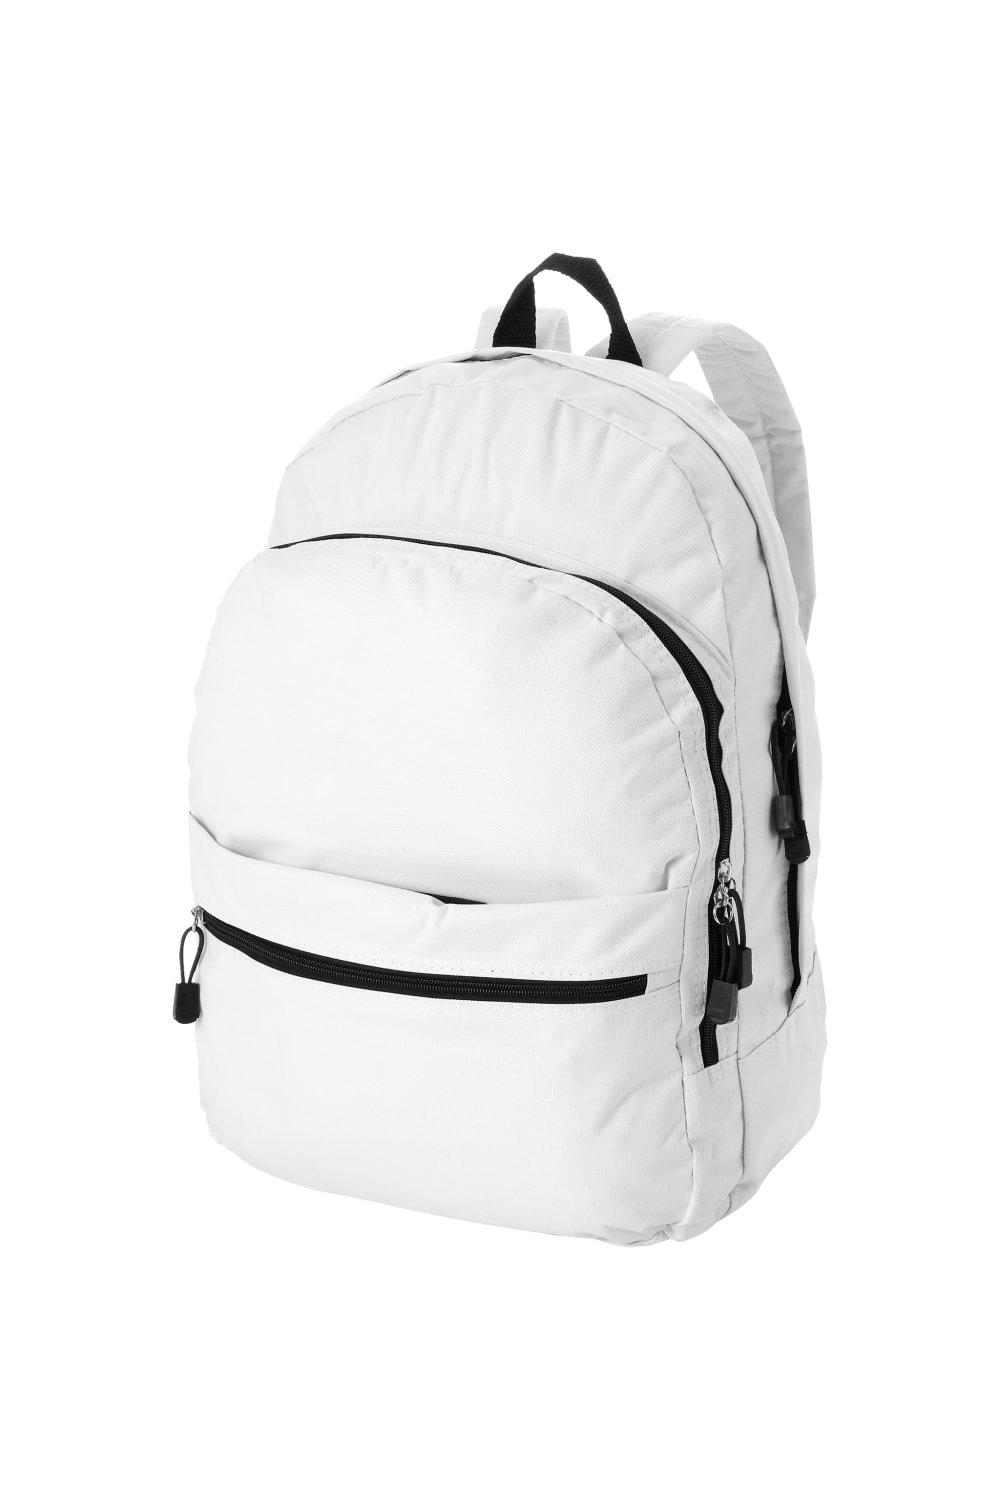 Трендовый рюкзак Bullet, белый универсальный сетчатый рюкзак унисекс с передним карманом оранжевый камуфляж